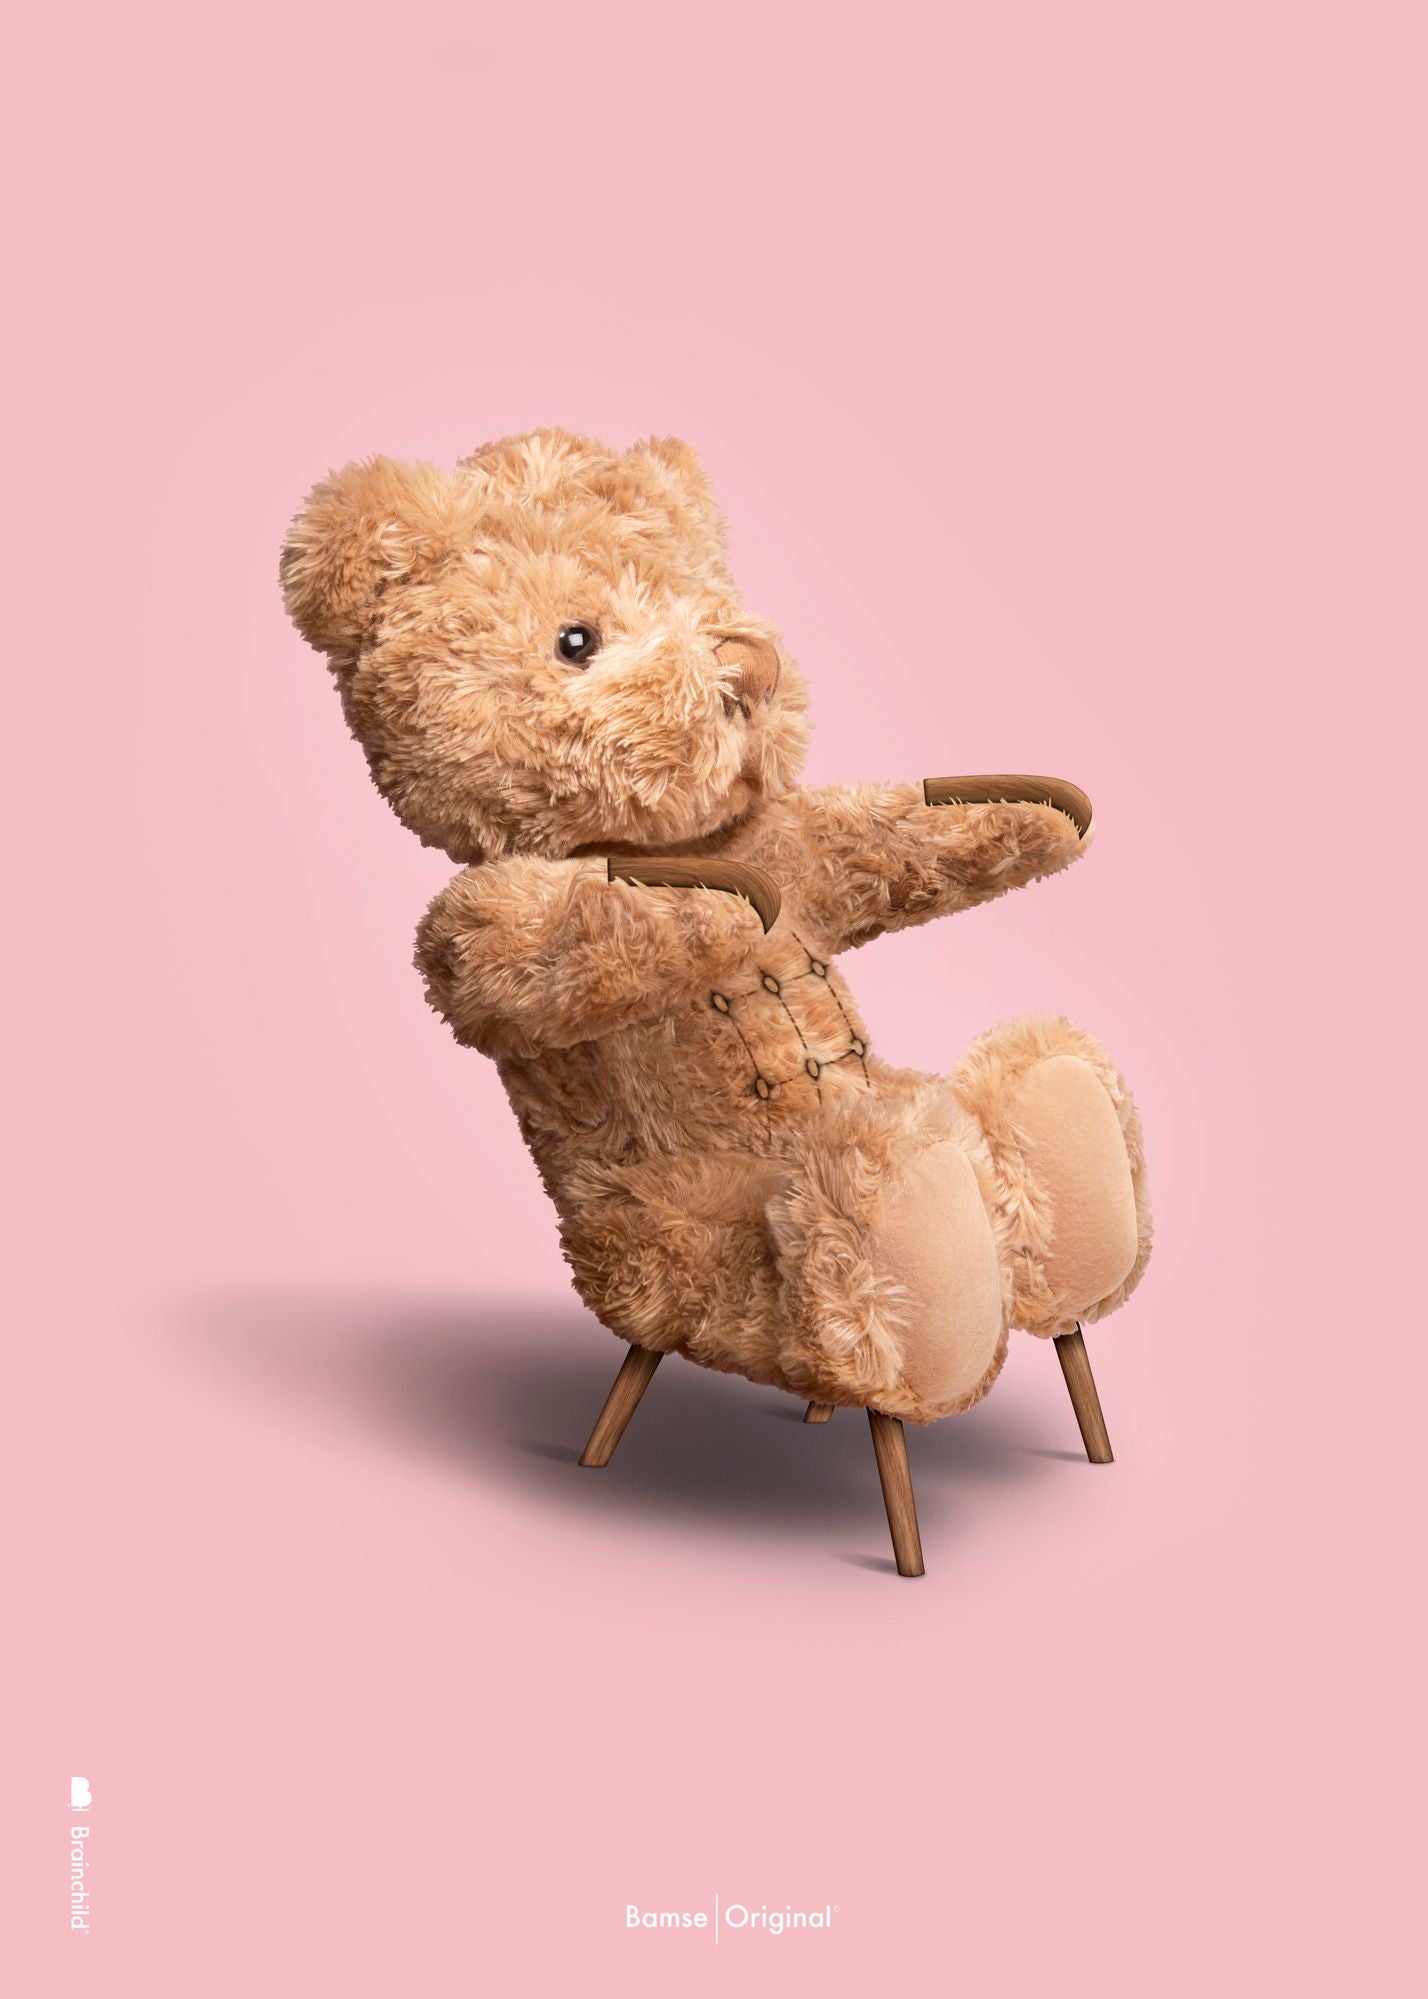 Poster classico orsacchiotto di orsacchiotto senza cornice A5, sfondo rosa